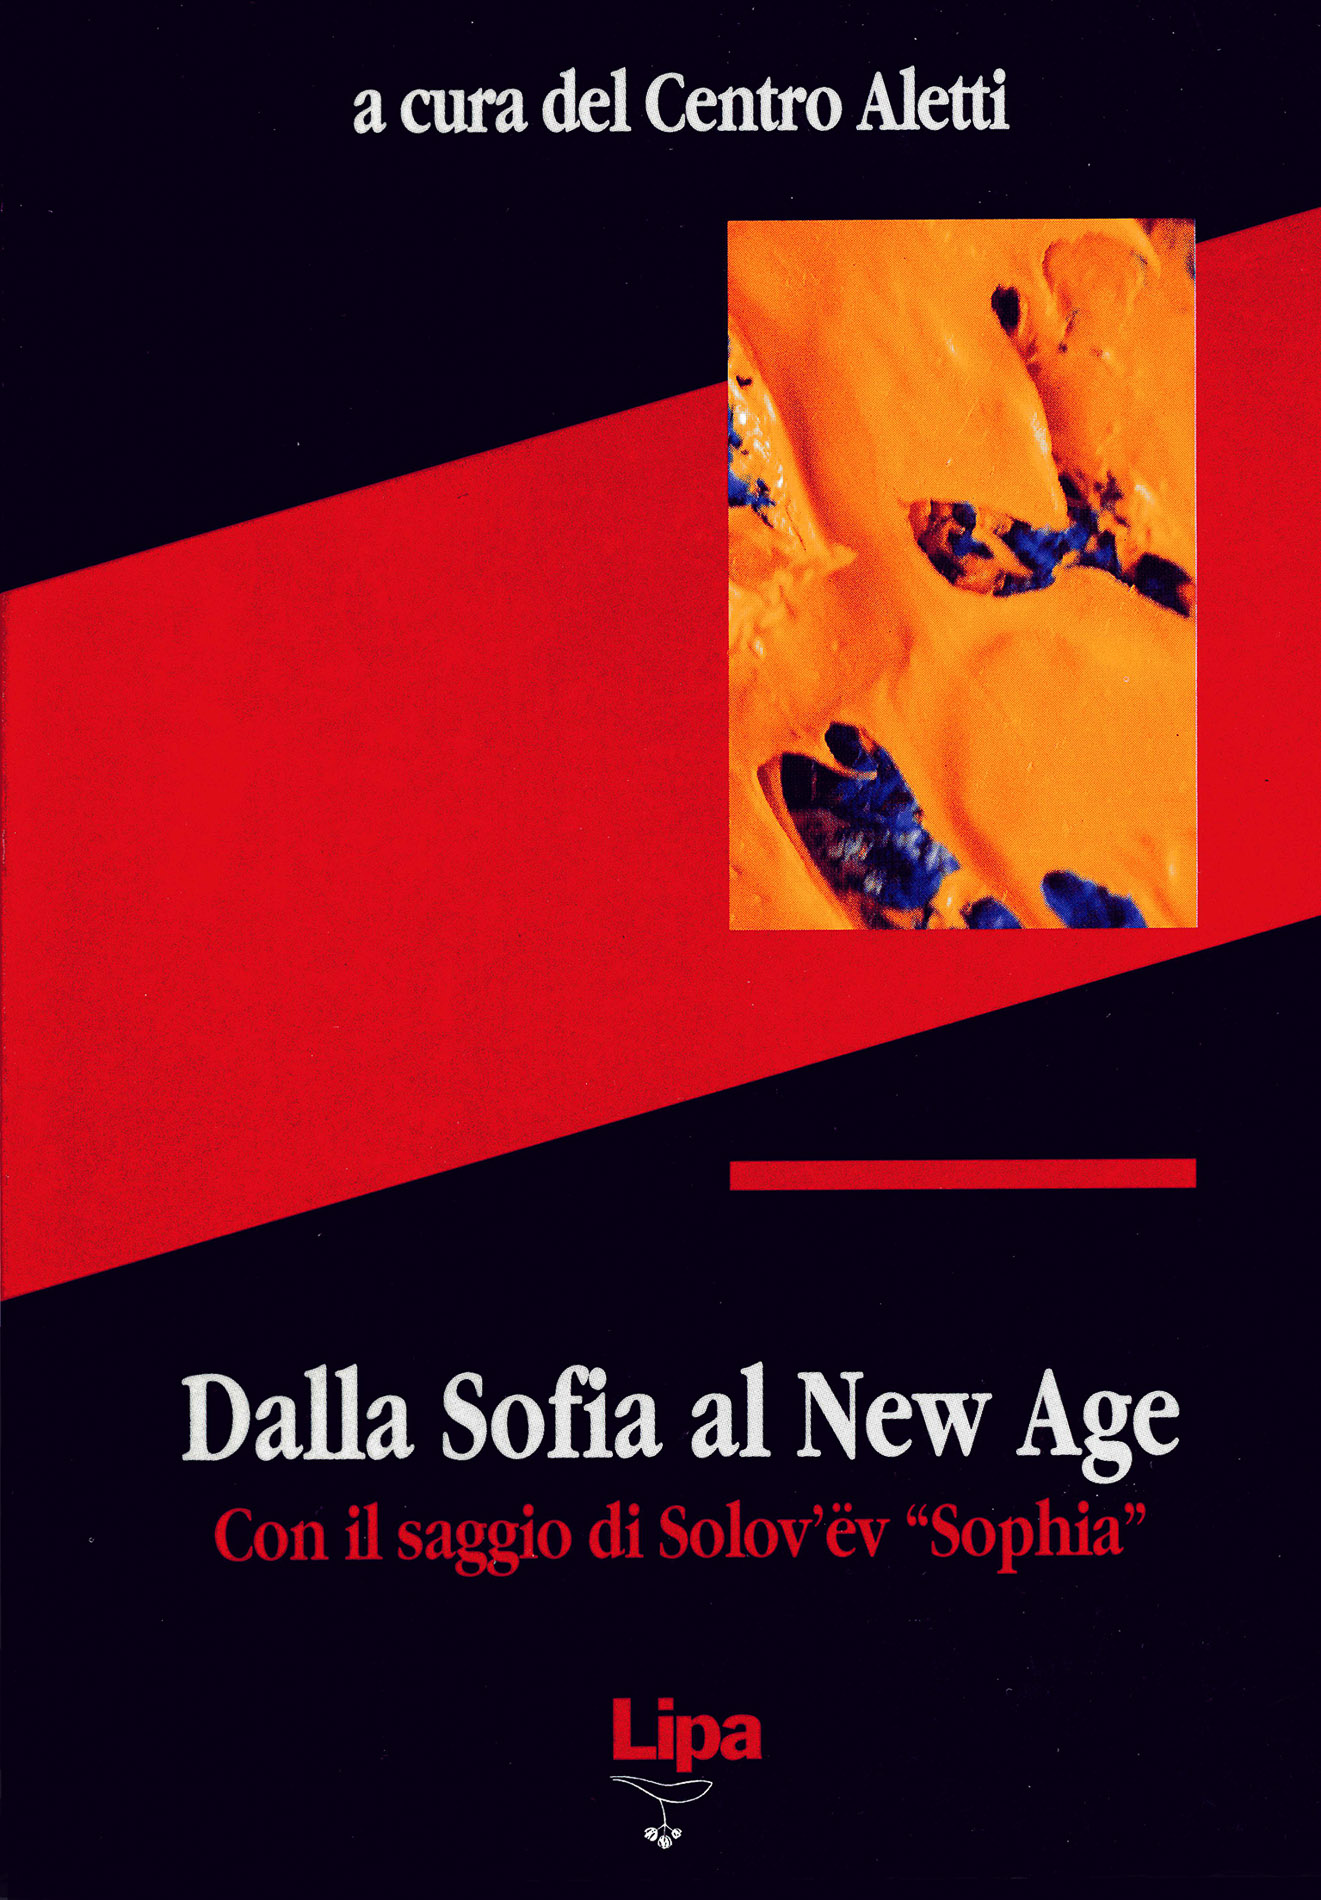 Copertina del libro "Dalla Sofia al New Age"